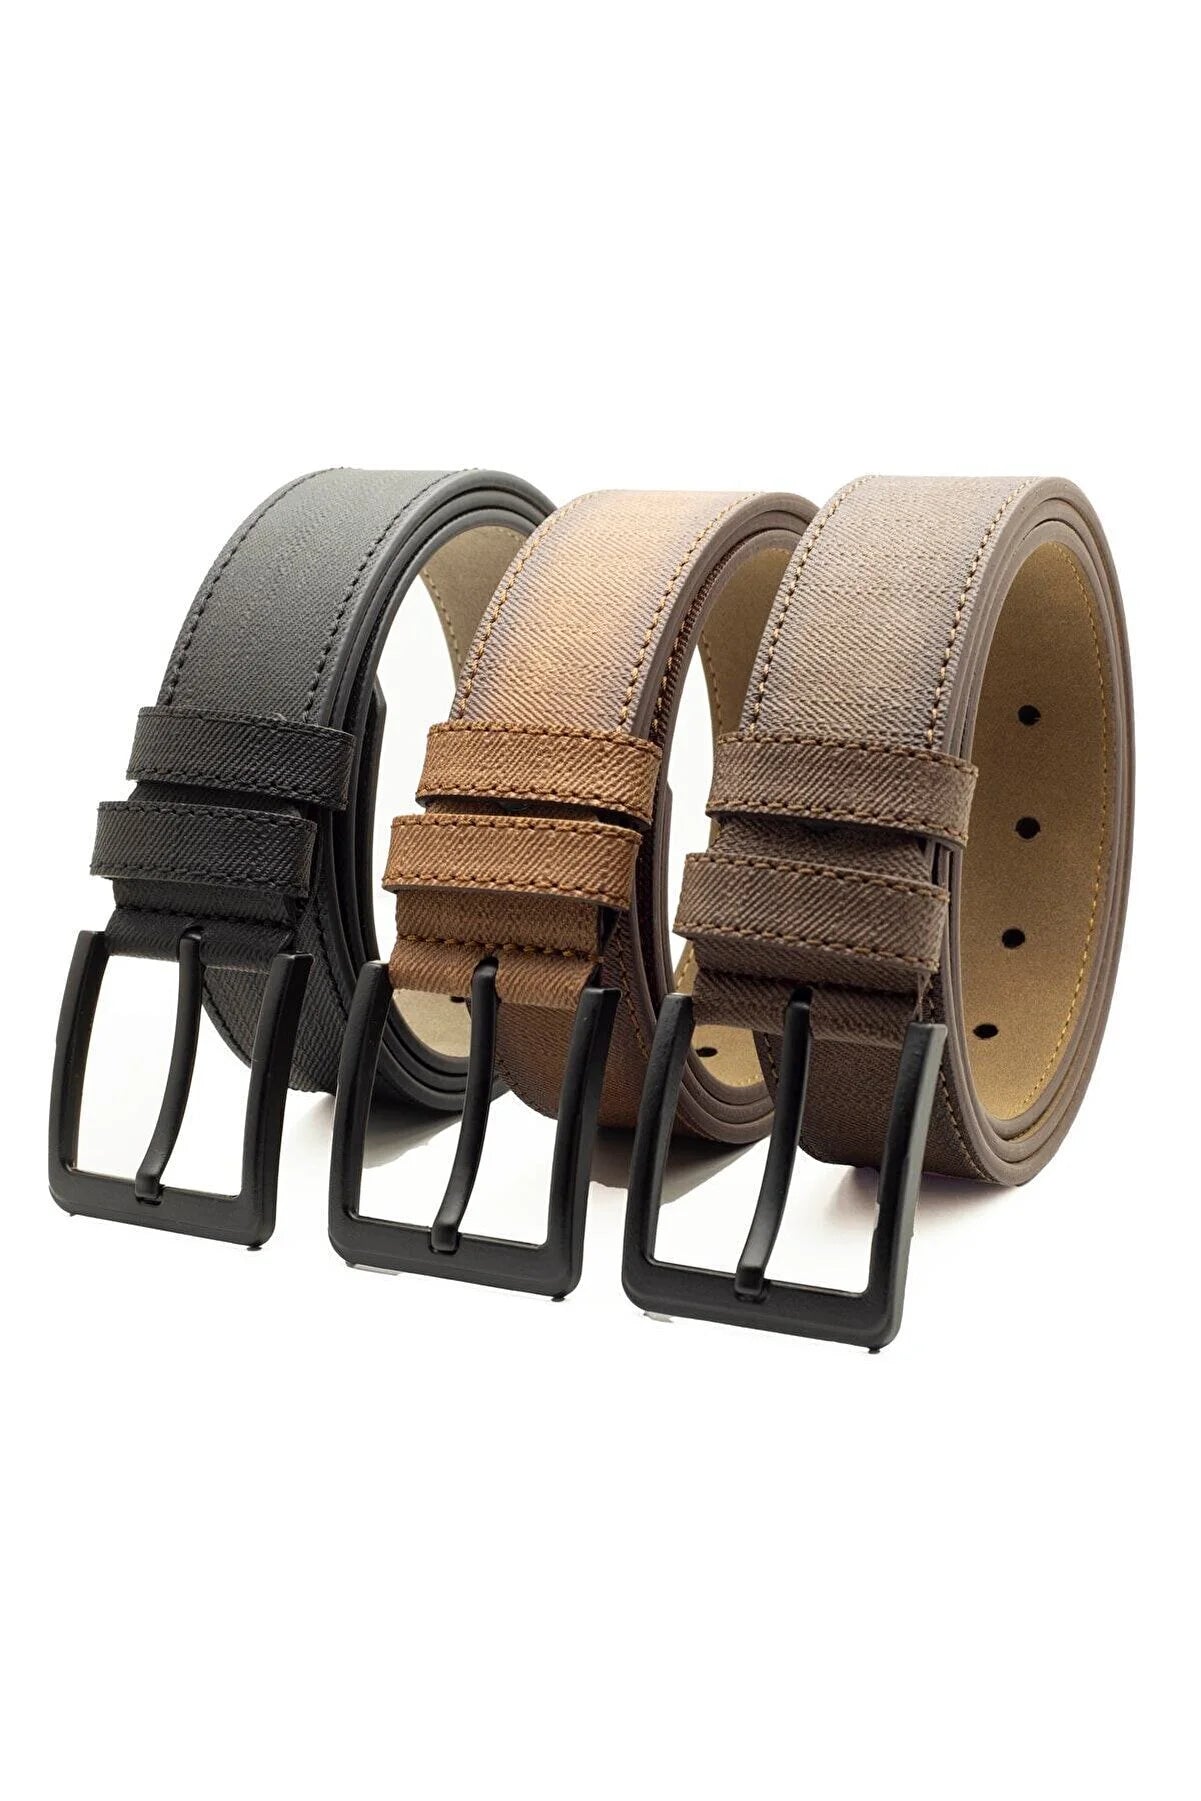 3 Pieces Men's Belt Set Suitable for Denim and Canvas - Classic Black Faux Leather